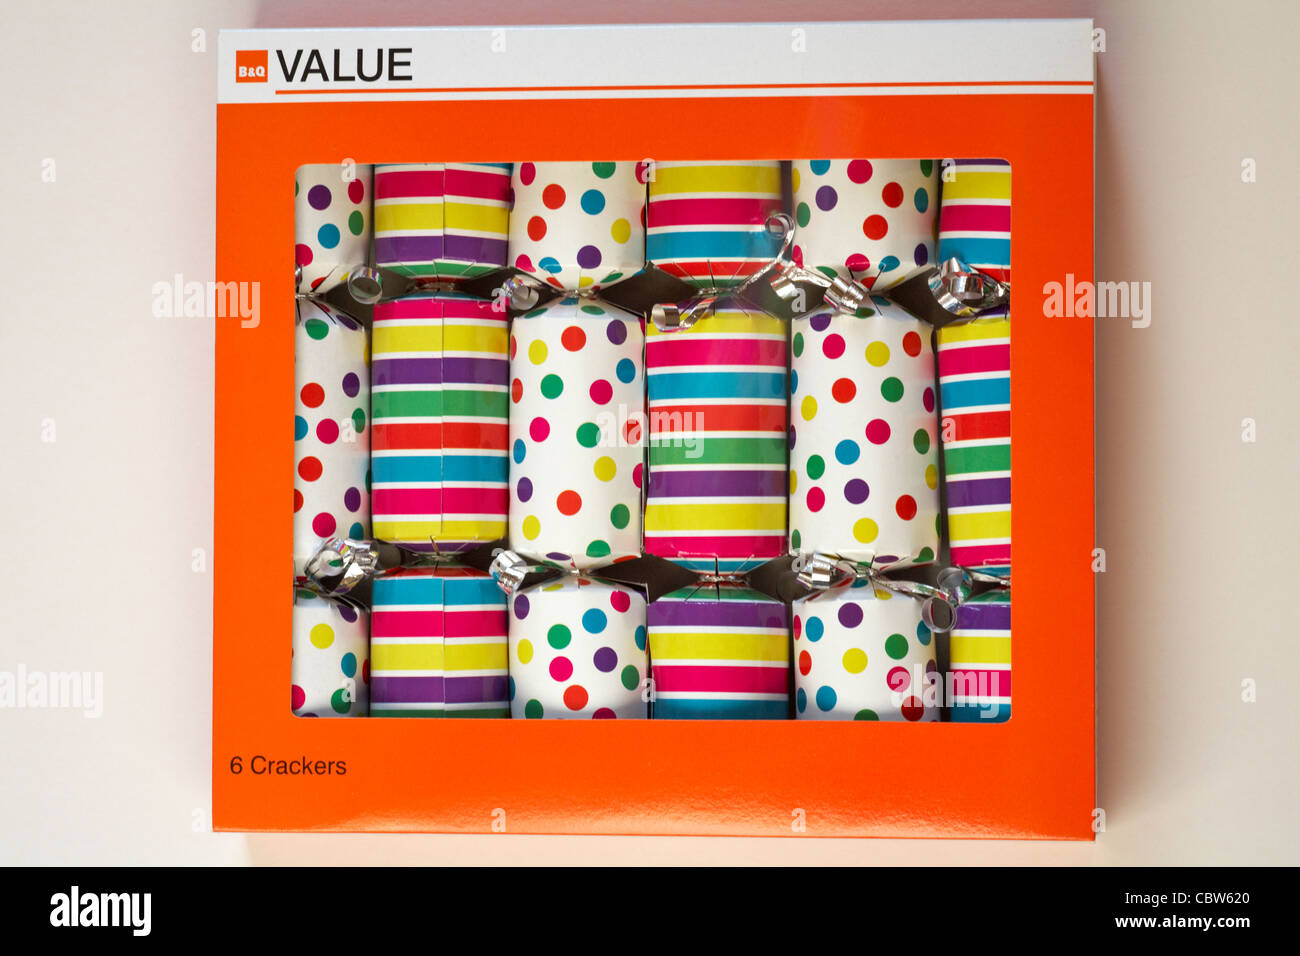 Kasten B&Q-Wert Knallbonbons - gestreifte Cracker und spotty Cracker auf weißem Hintergrund Stockfoto